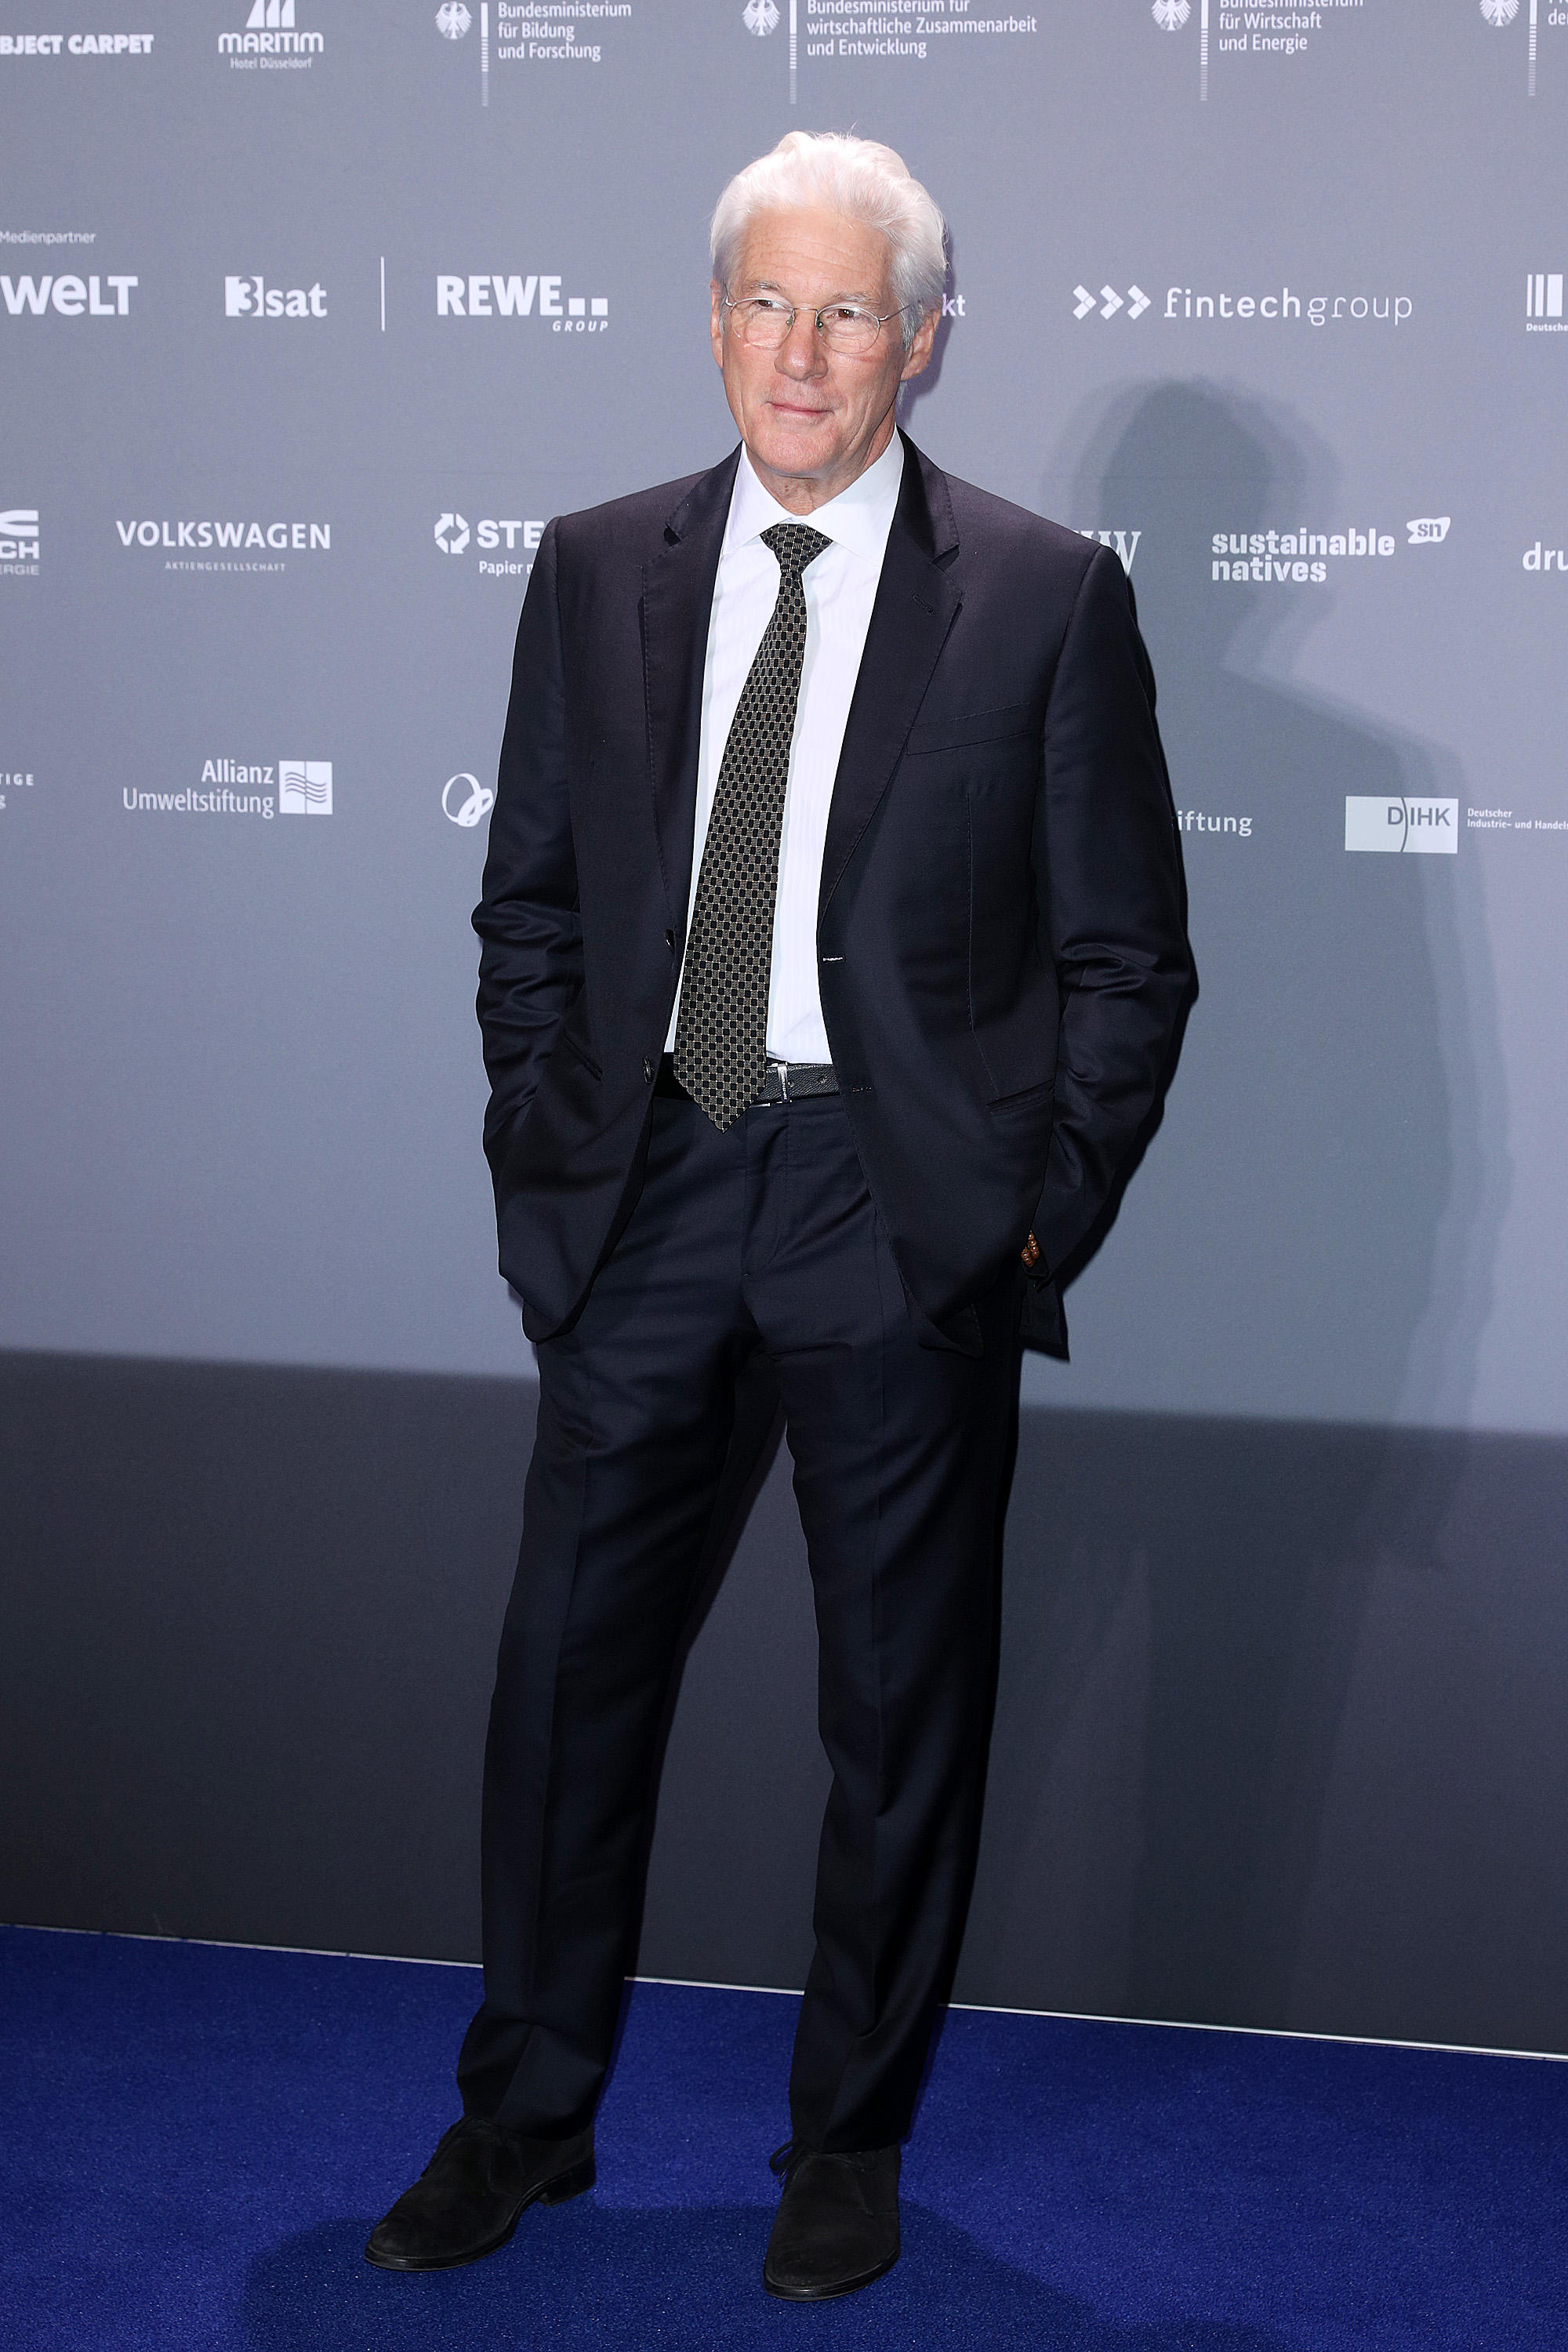 Richard Gere en el Premio Alemán a la Sostenibilidad en Dusseldorf, Alemania, el 7 de diciembre de 2018 | Fuente: Getty Images